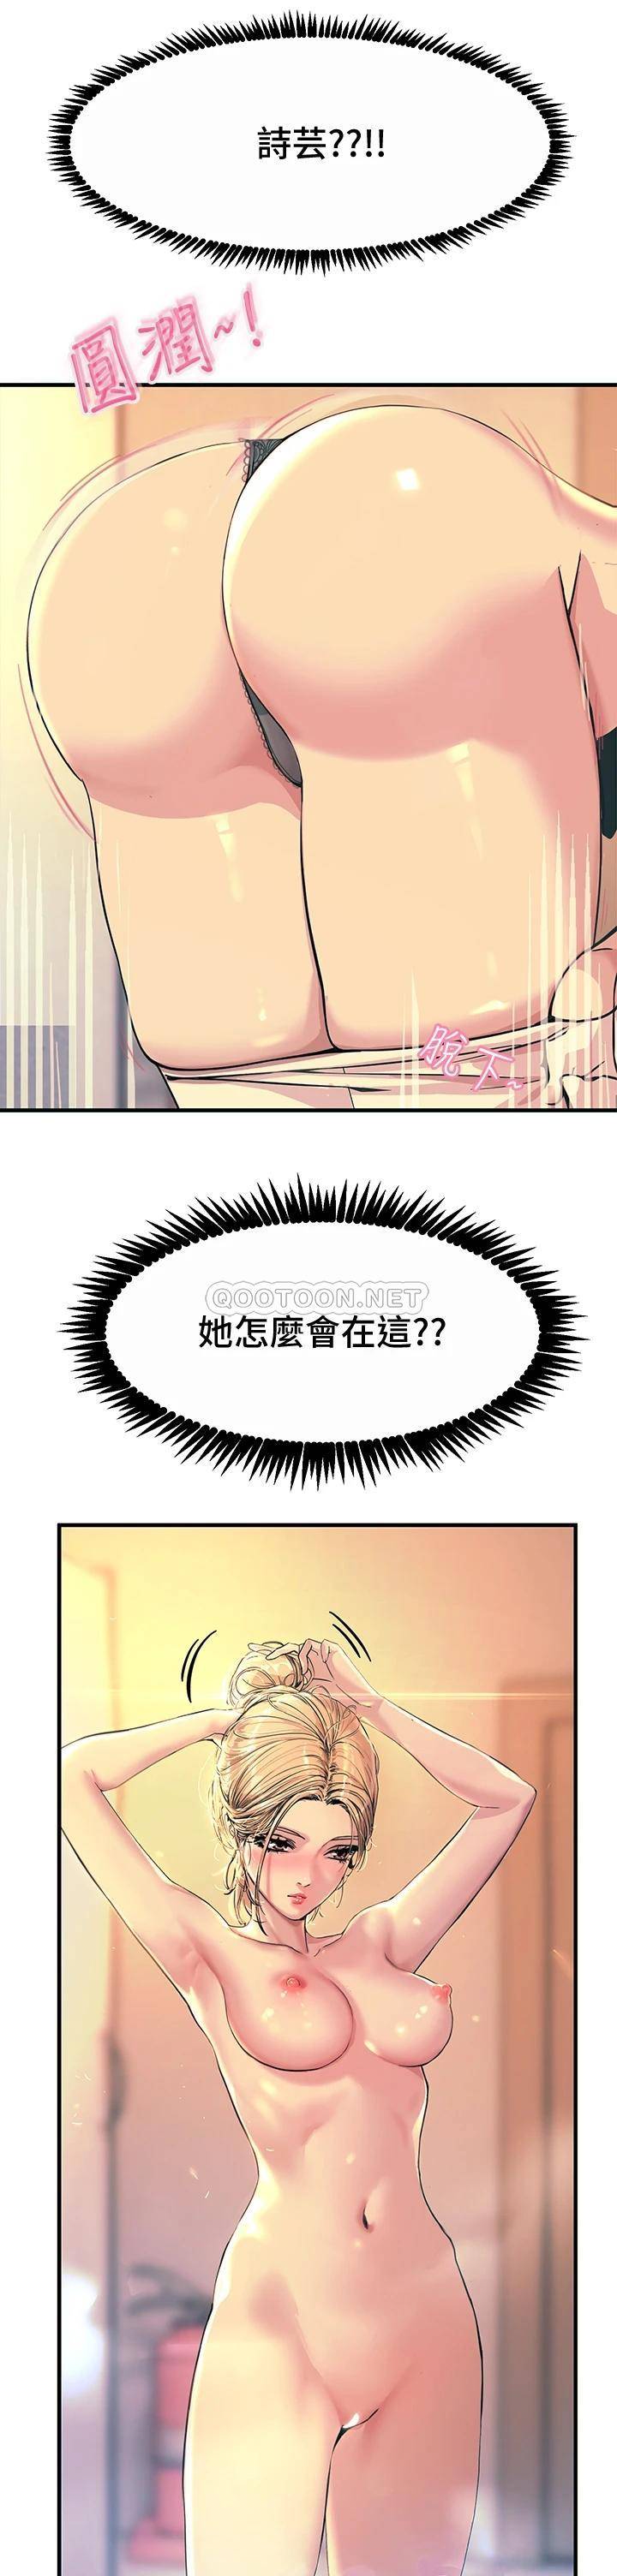 韩国污漫画 觸電大師 第2话 和性感胴体的亲密接触 43